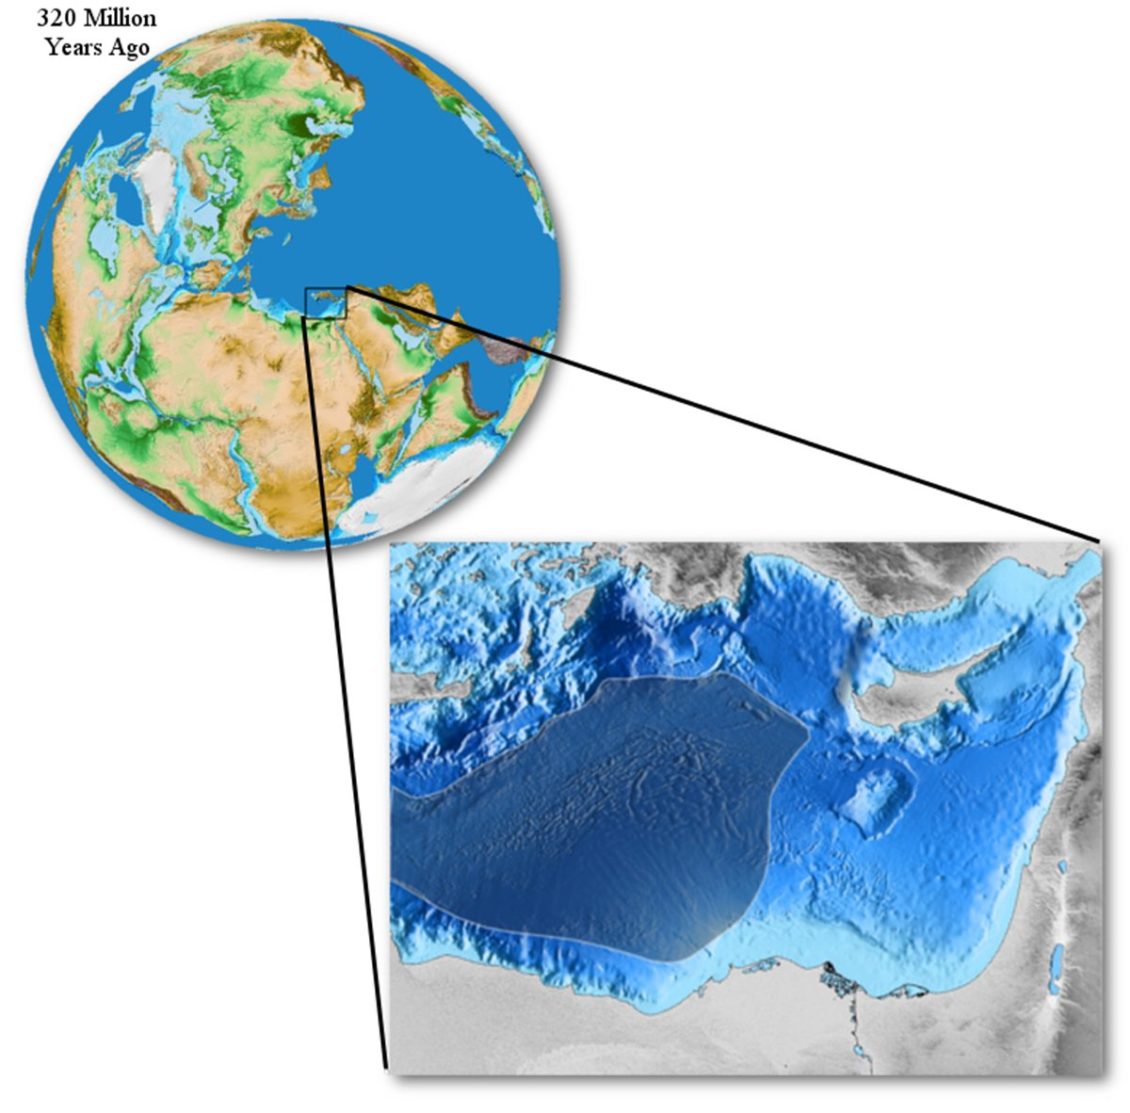 tethys-ocean-pangea-nature-geoscience-roi-granot